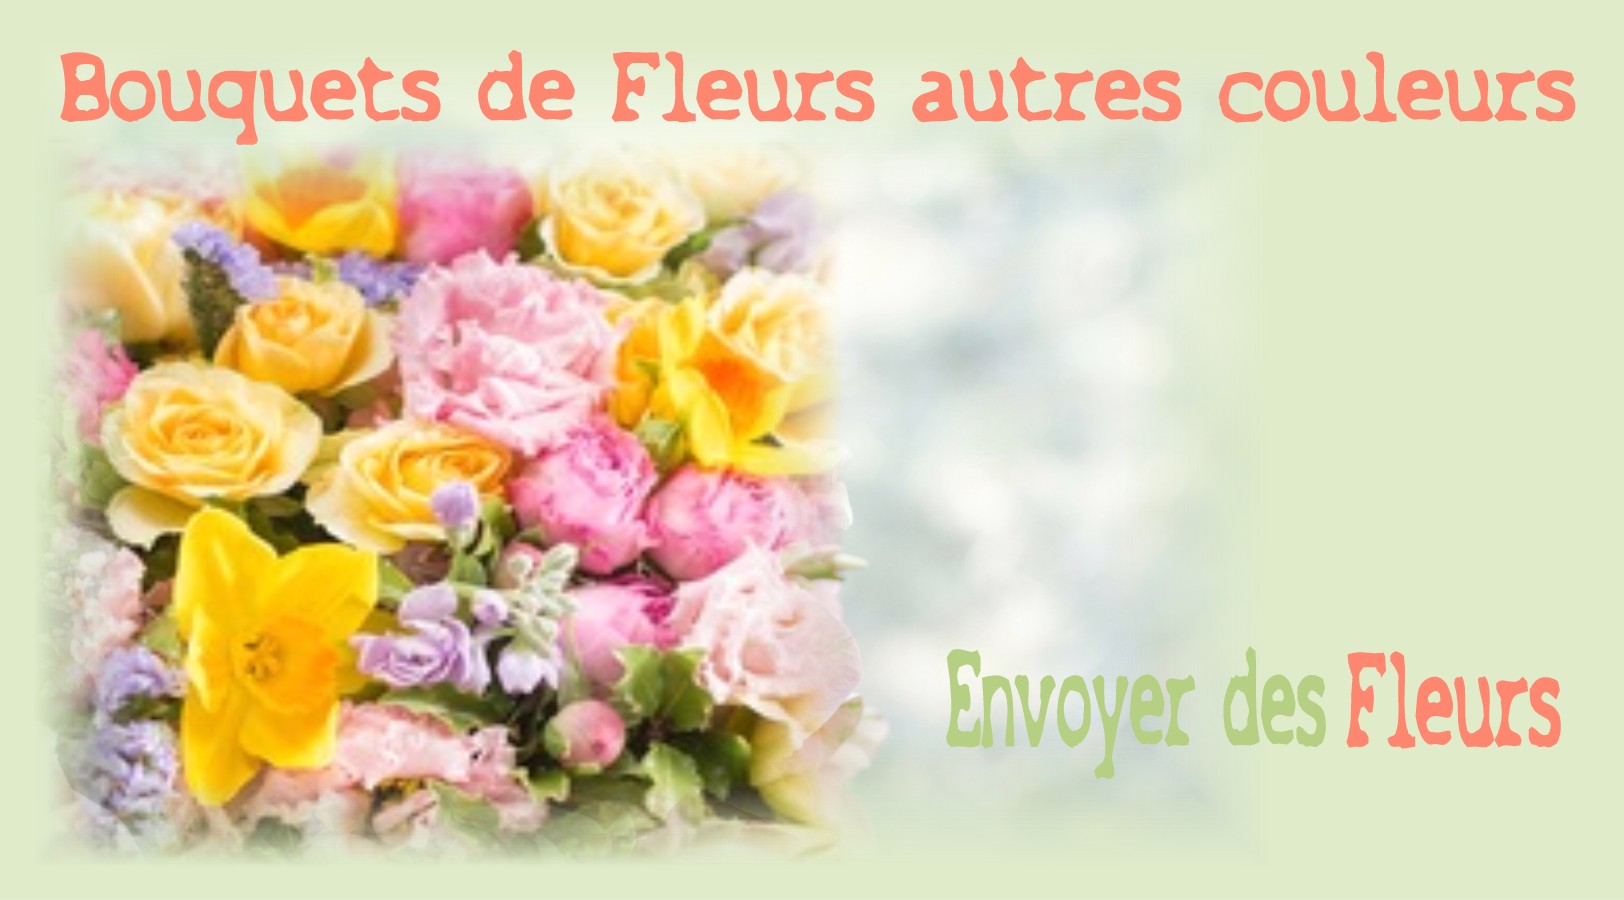 BOUQUETS DE FLEURS AUTRES COULEURS - FLEURISTE NICE (06) - ENVOYER DES FLEURS